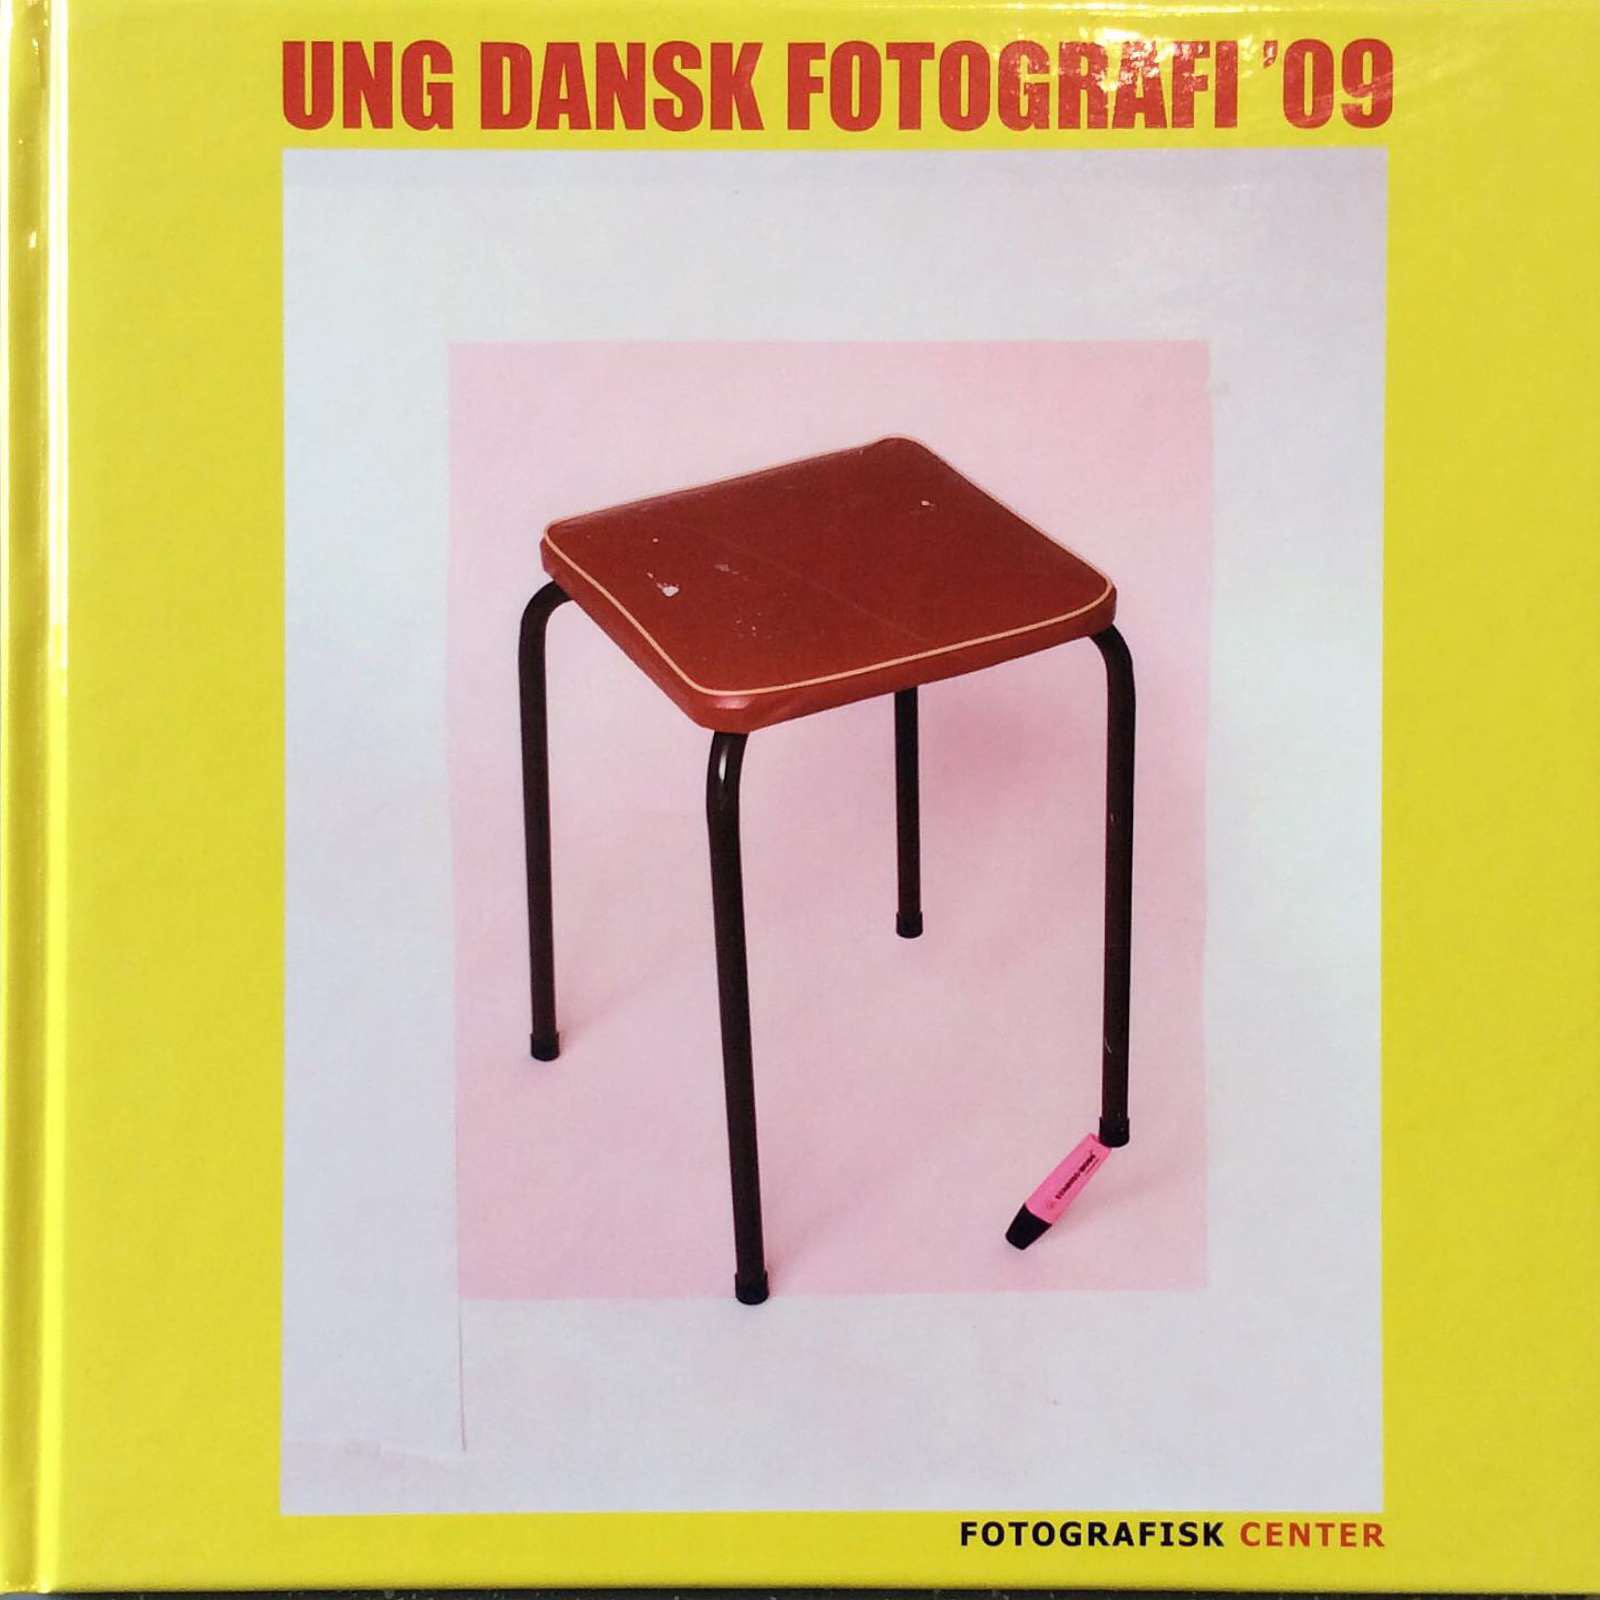 Ung dansk fotografi 2009